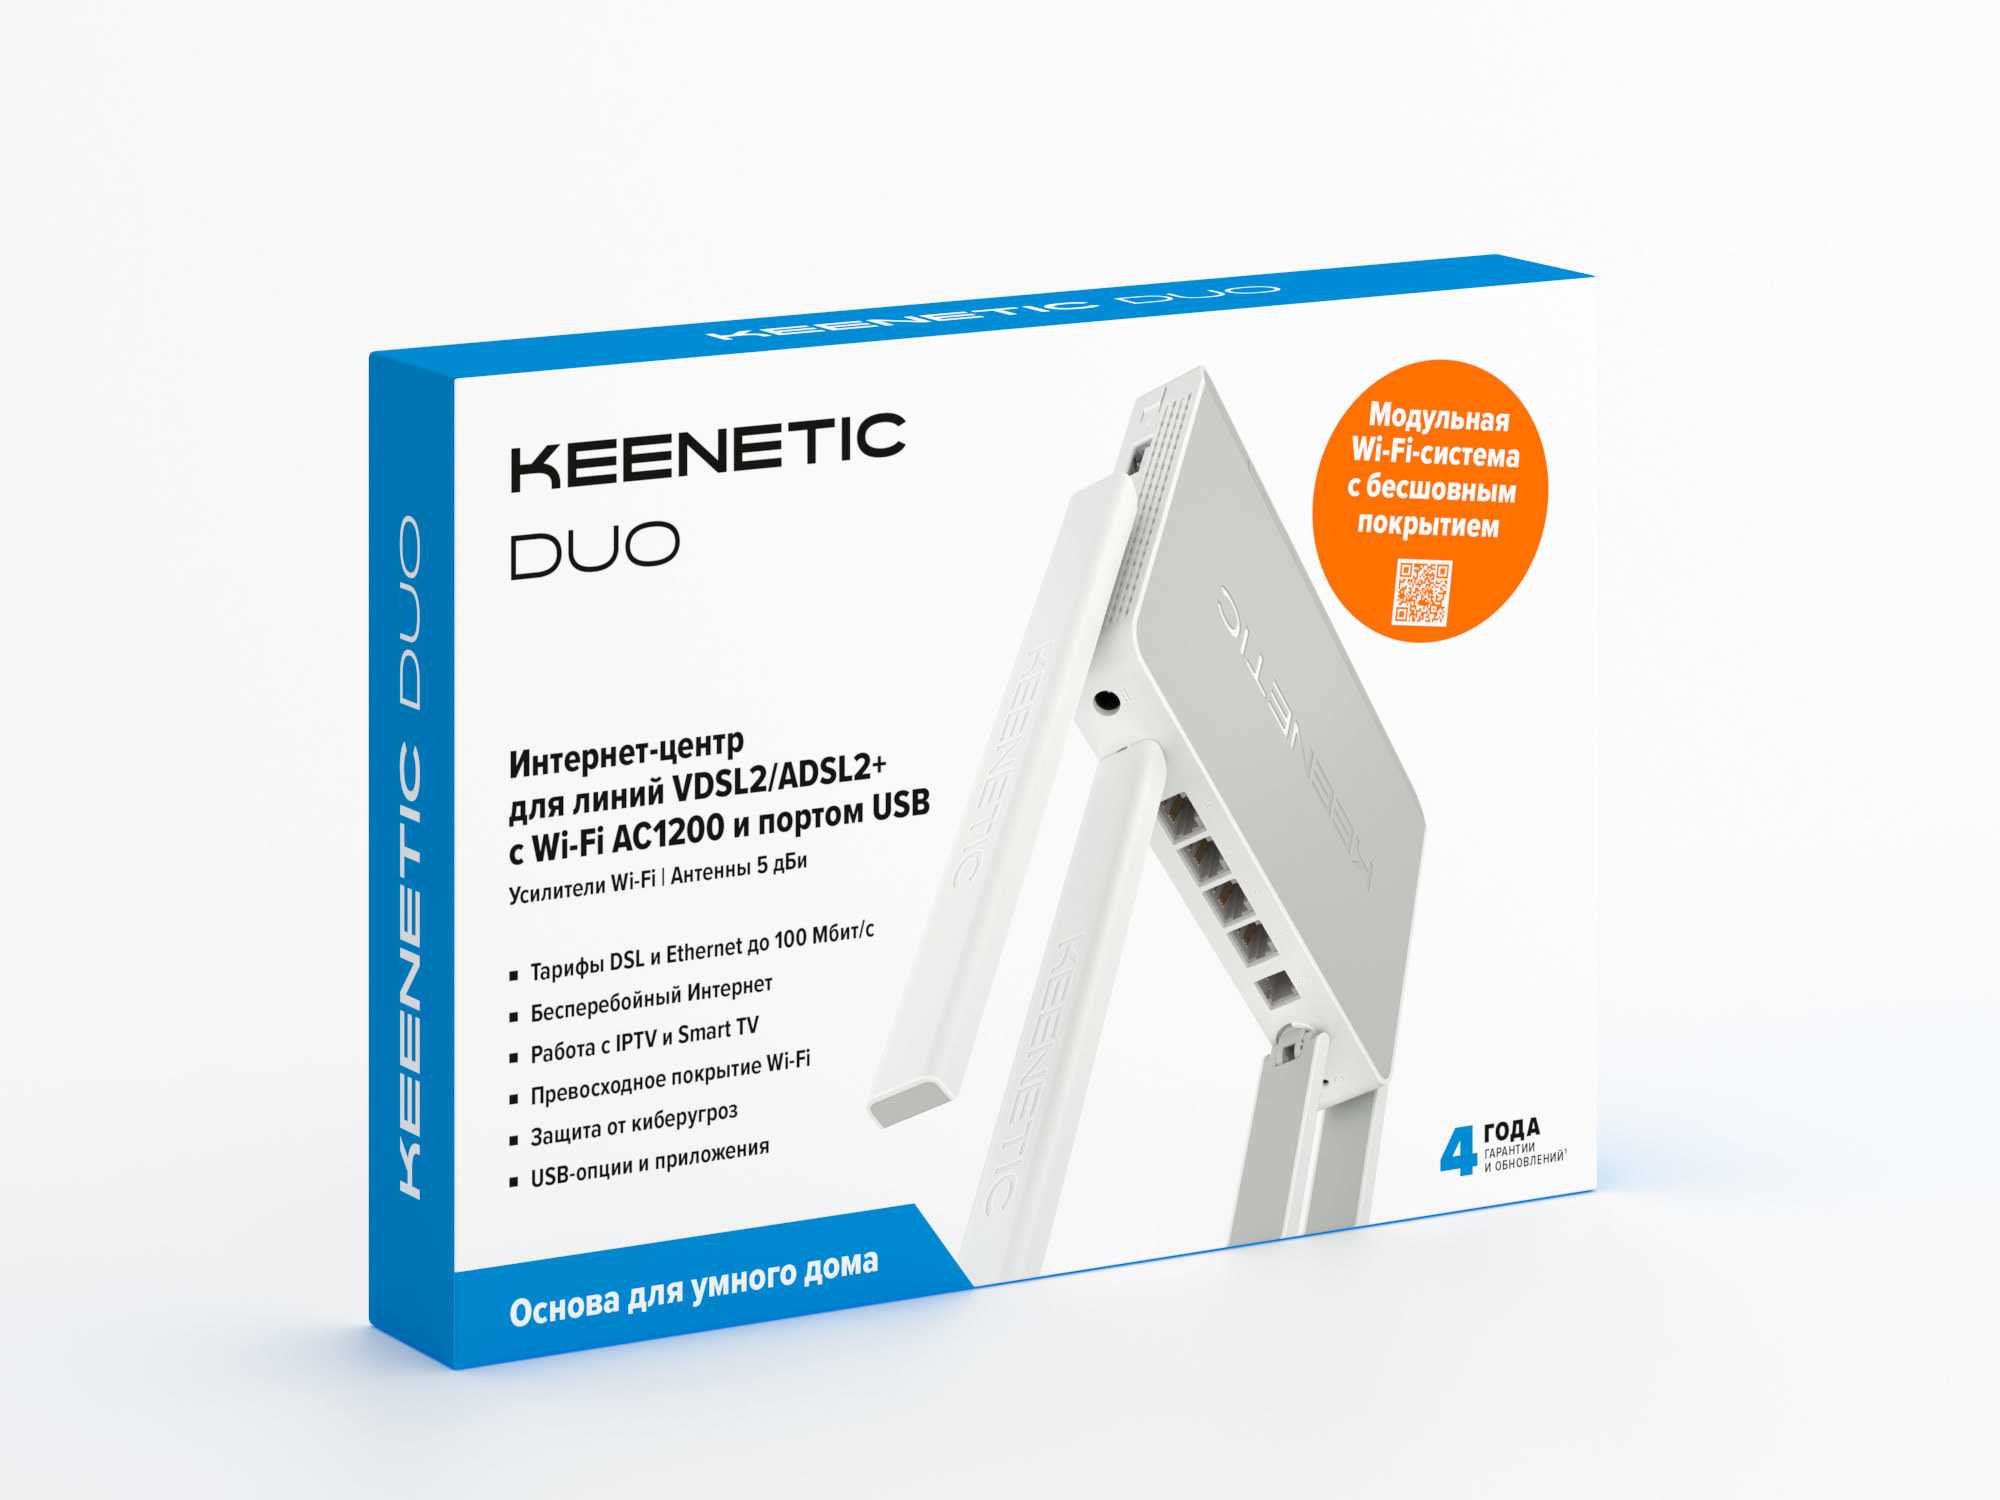 Обзор keenetic speedster kn-3010 (ac1200) — характеристики роутера, инструкция по настройке и отзыв о скорости интернета по wifi